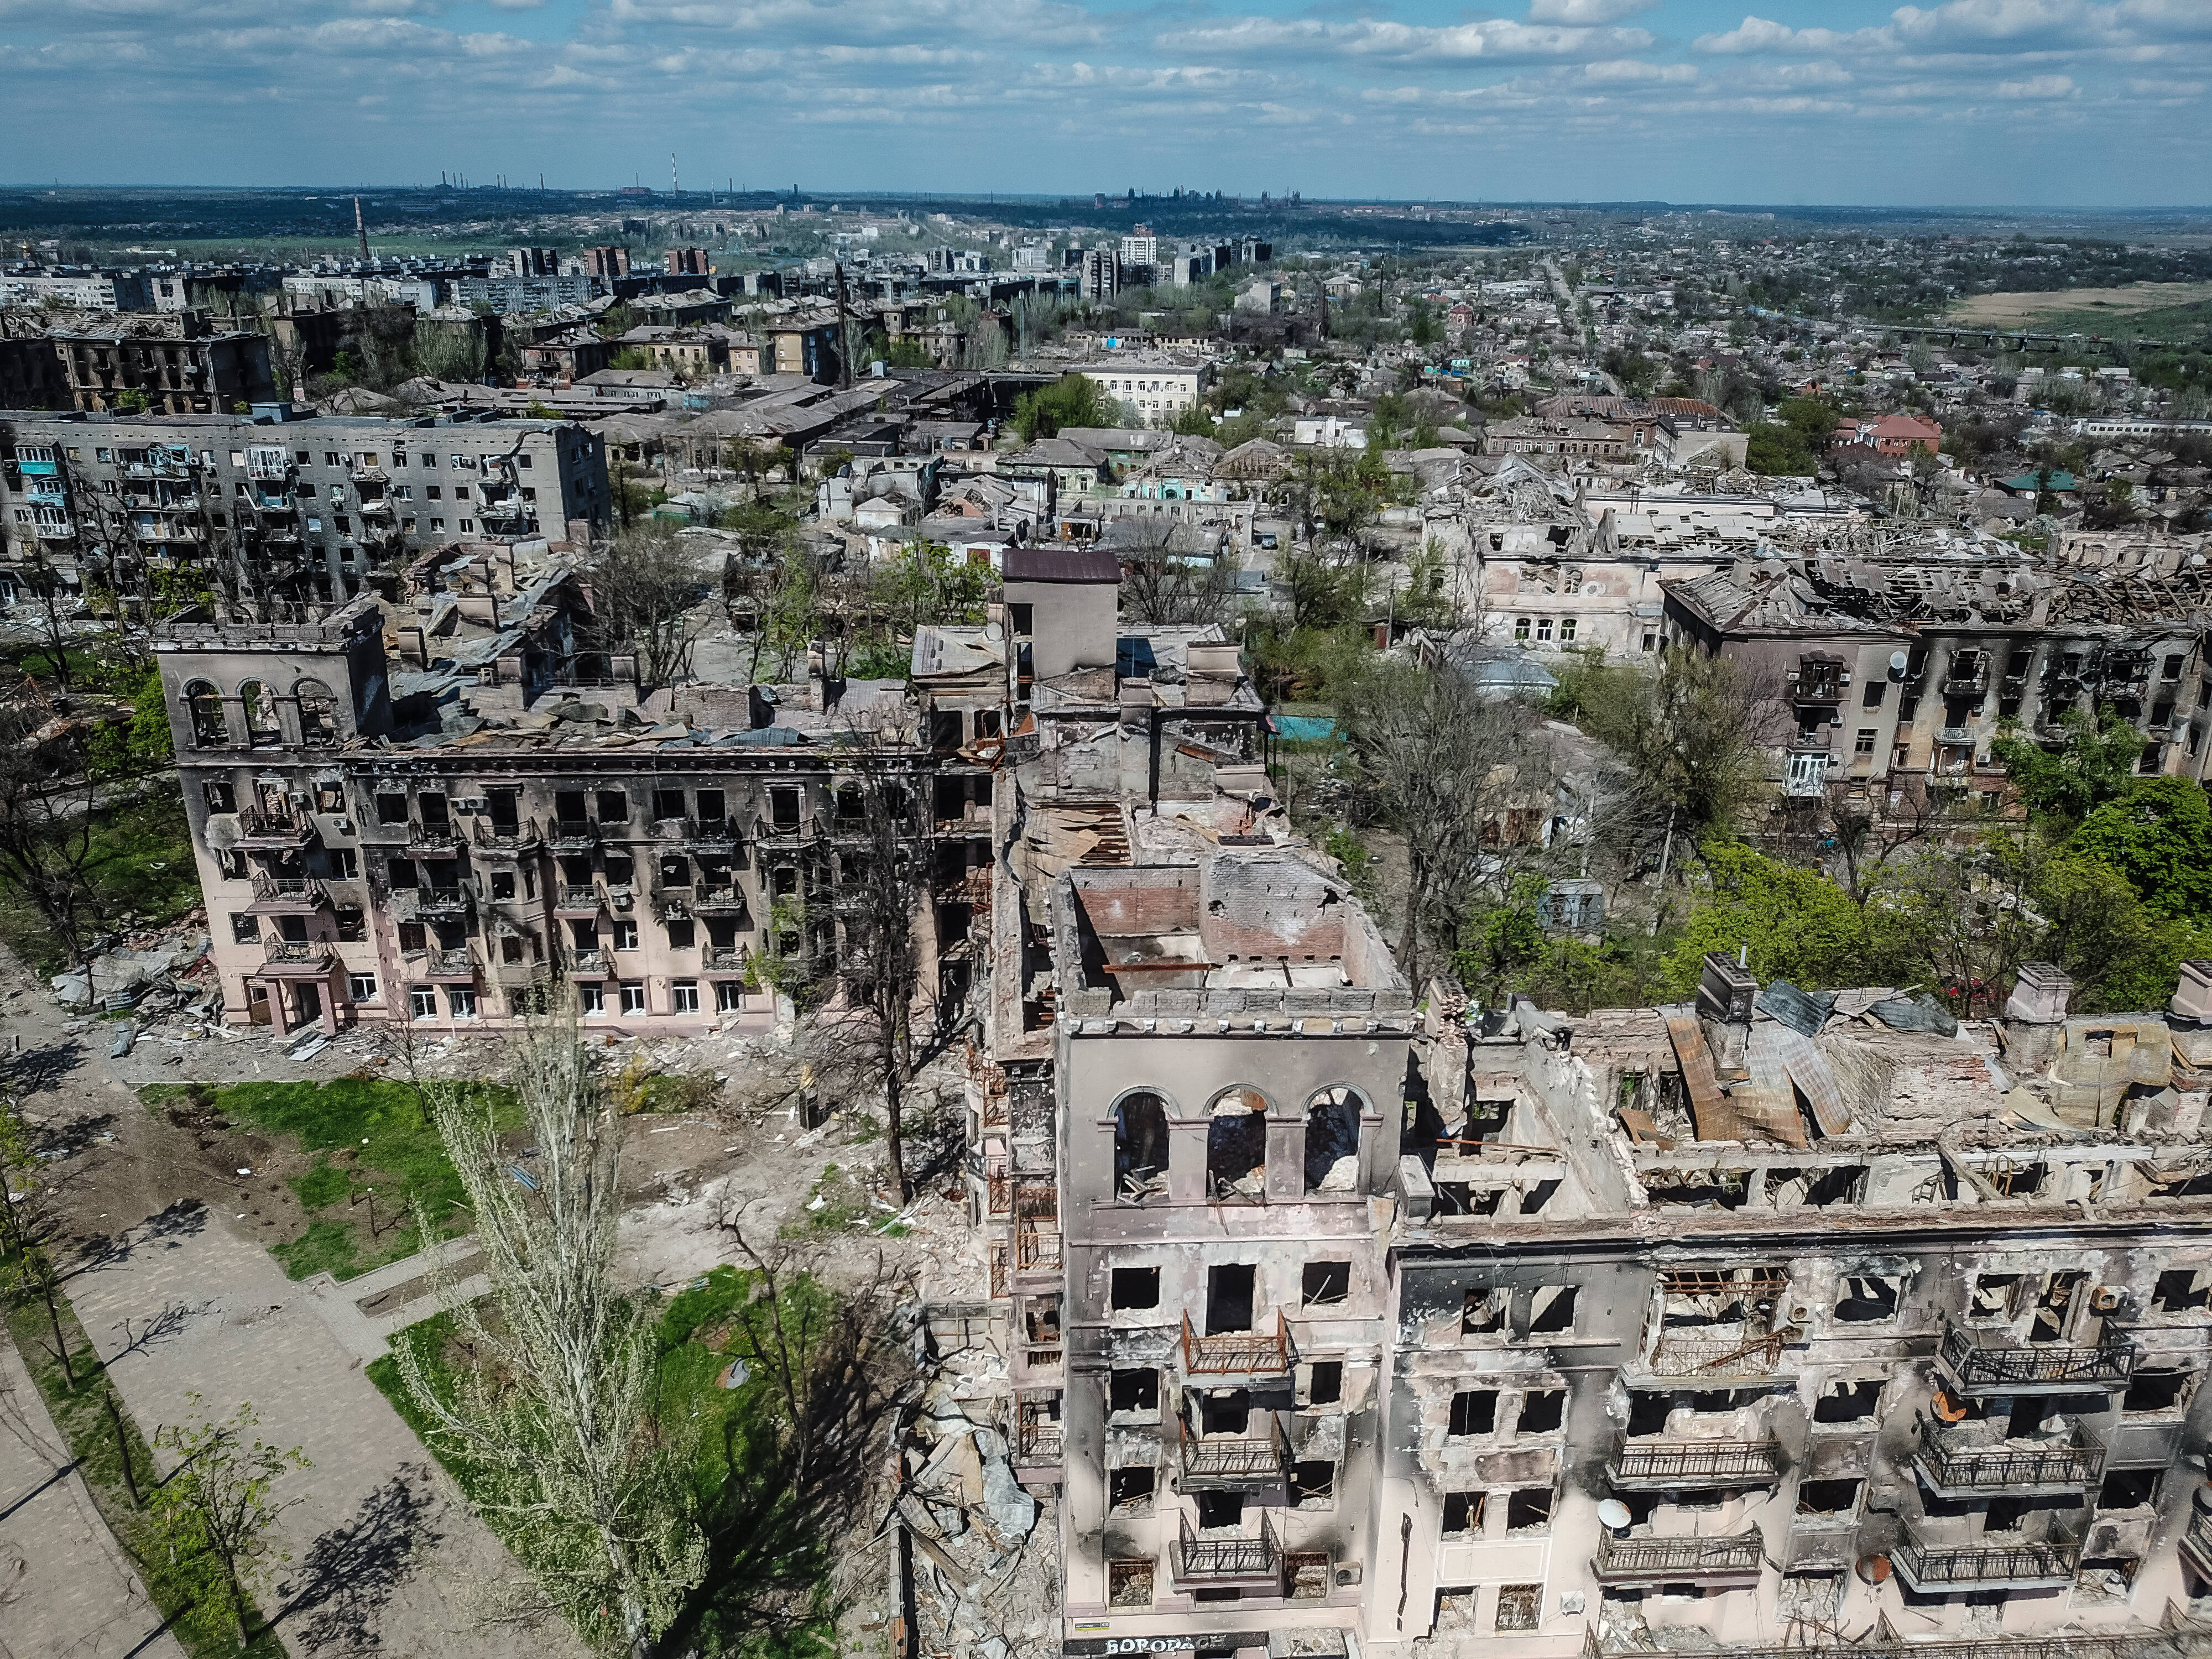 Război în Ucraina - rezumatul evenimentelor, 1 mai 2022. Ultima redută din Mariupol rezistă în buncăre